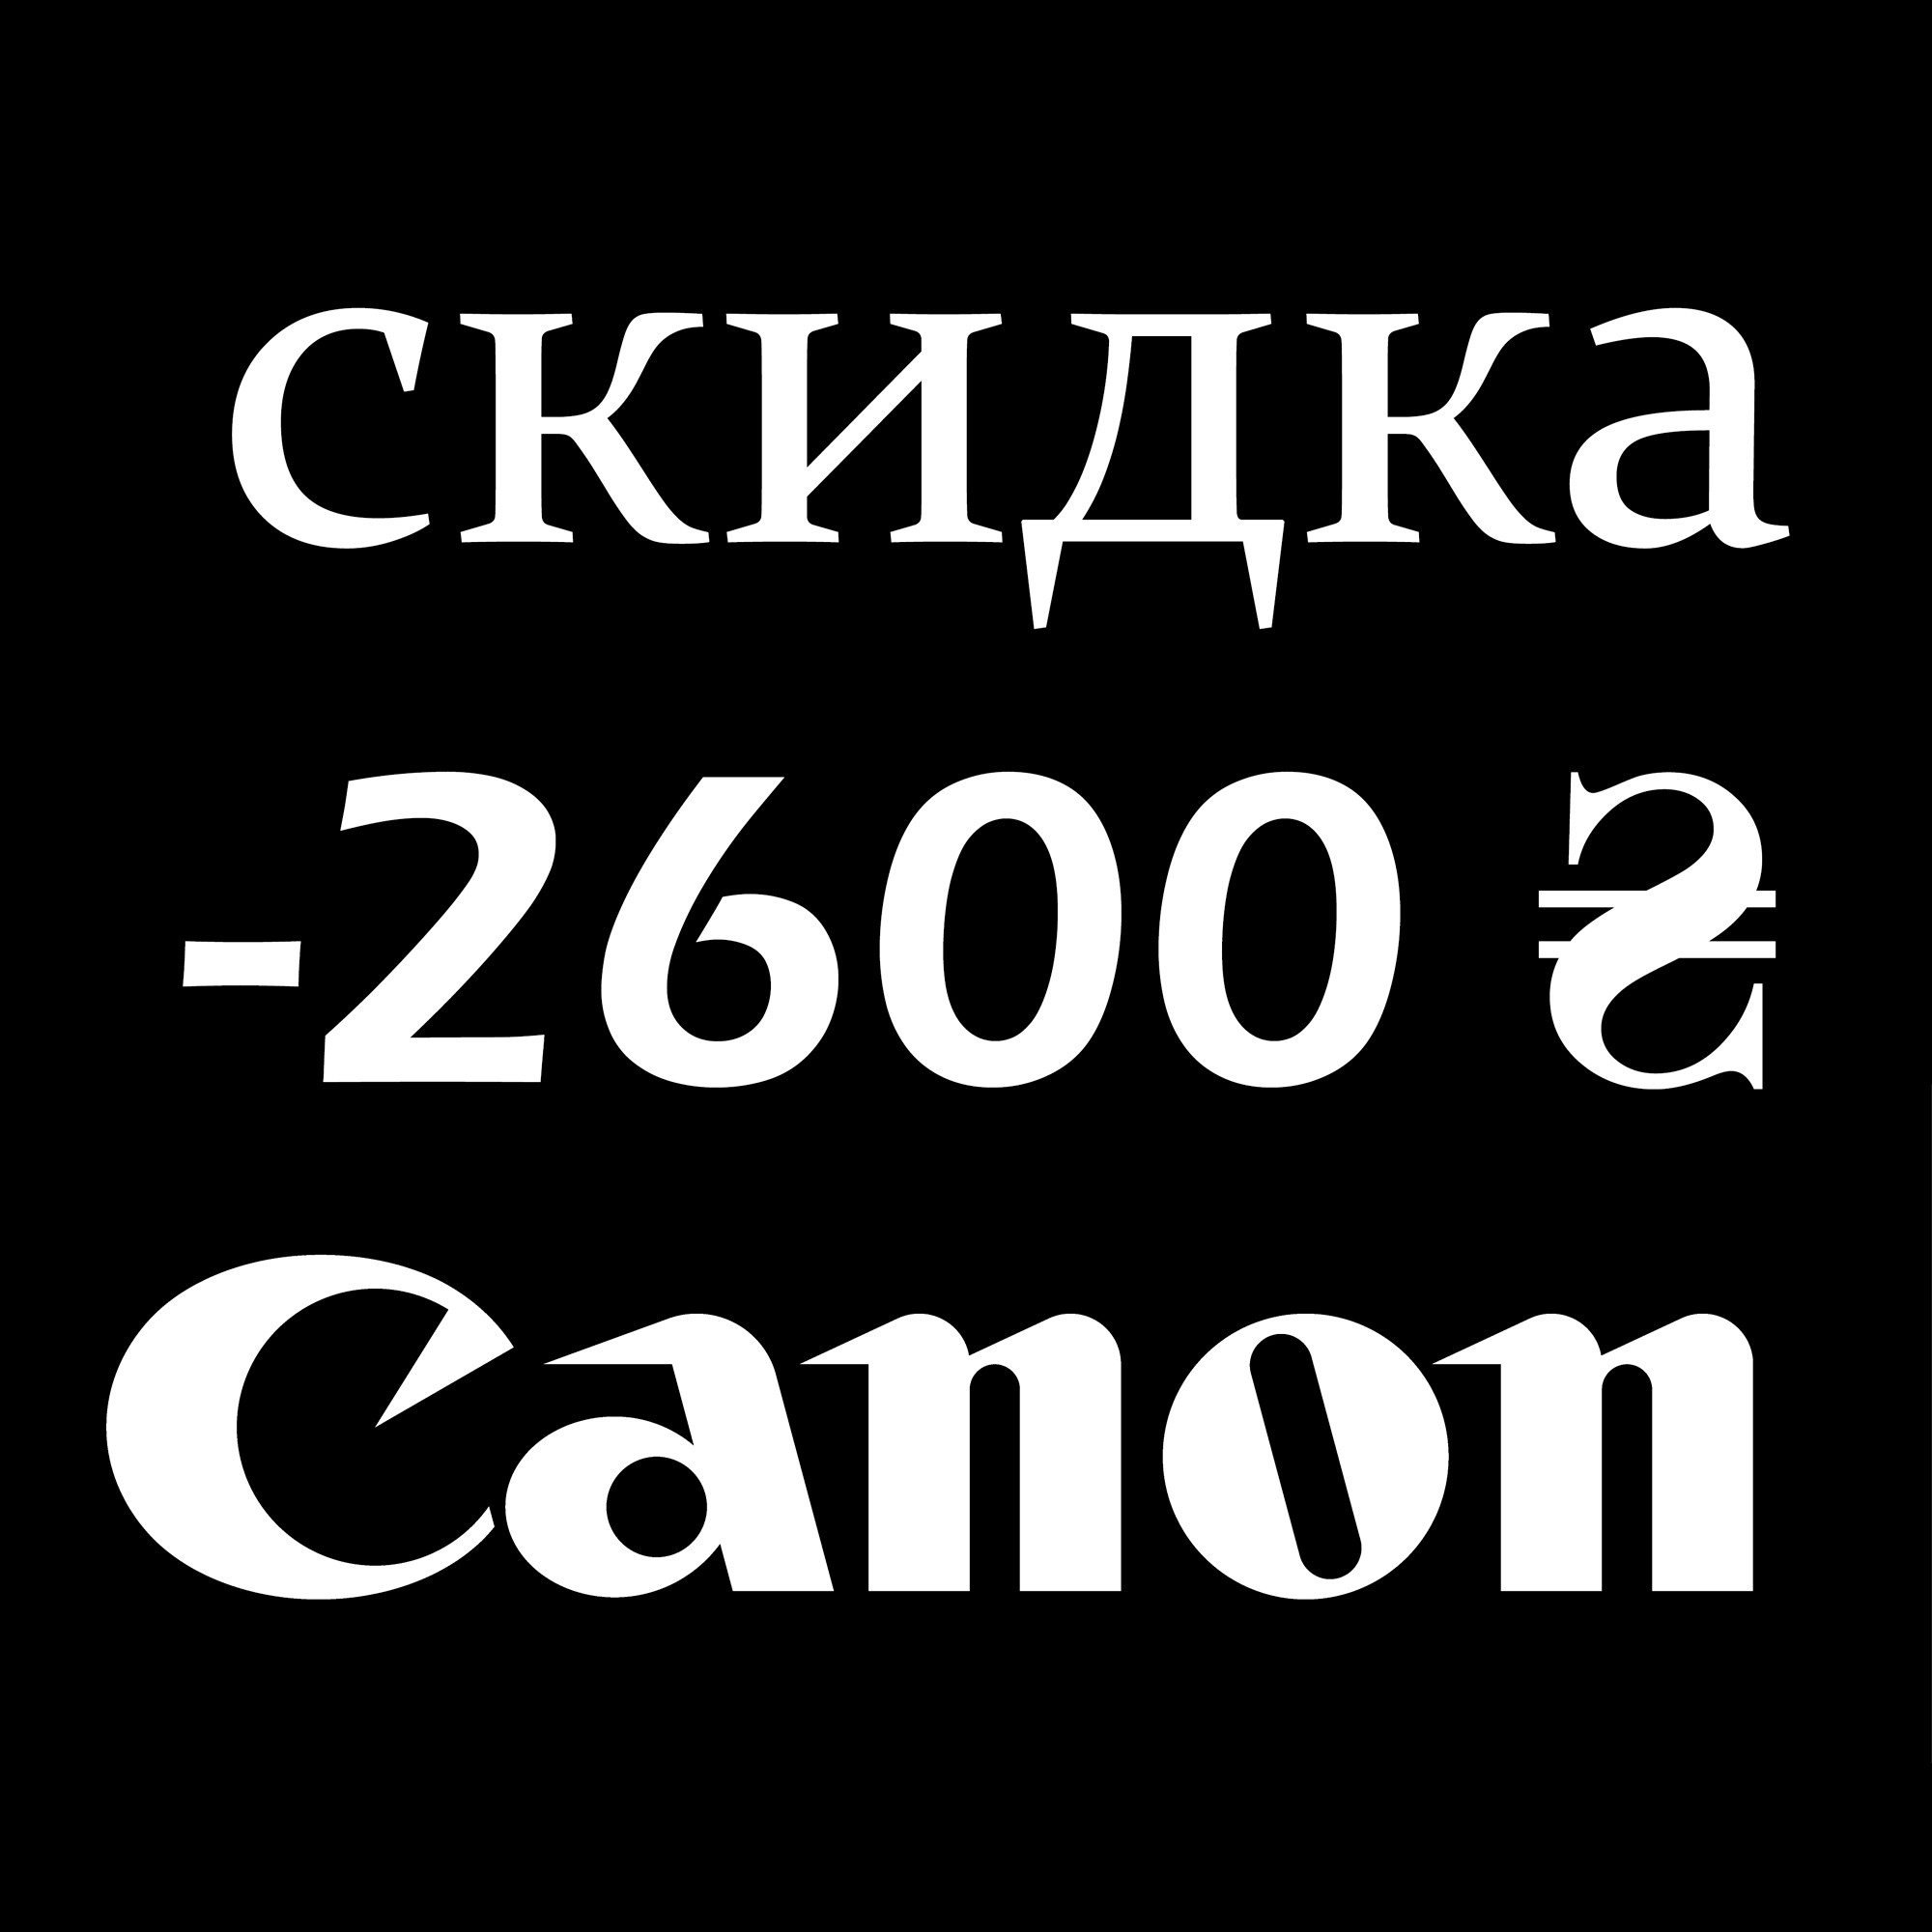 Сертификат-скидка Canon 2600 гривен